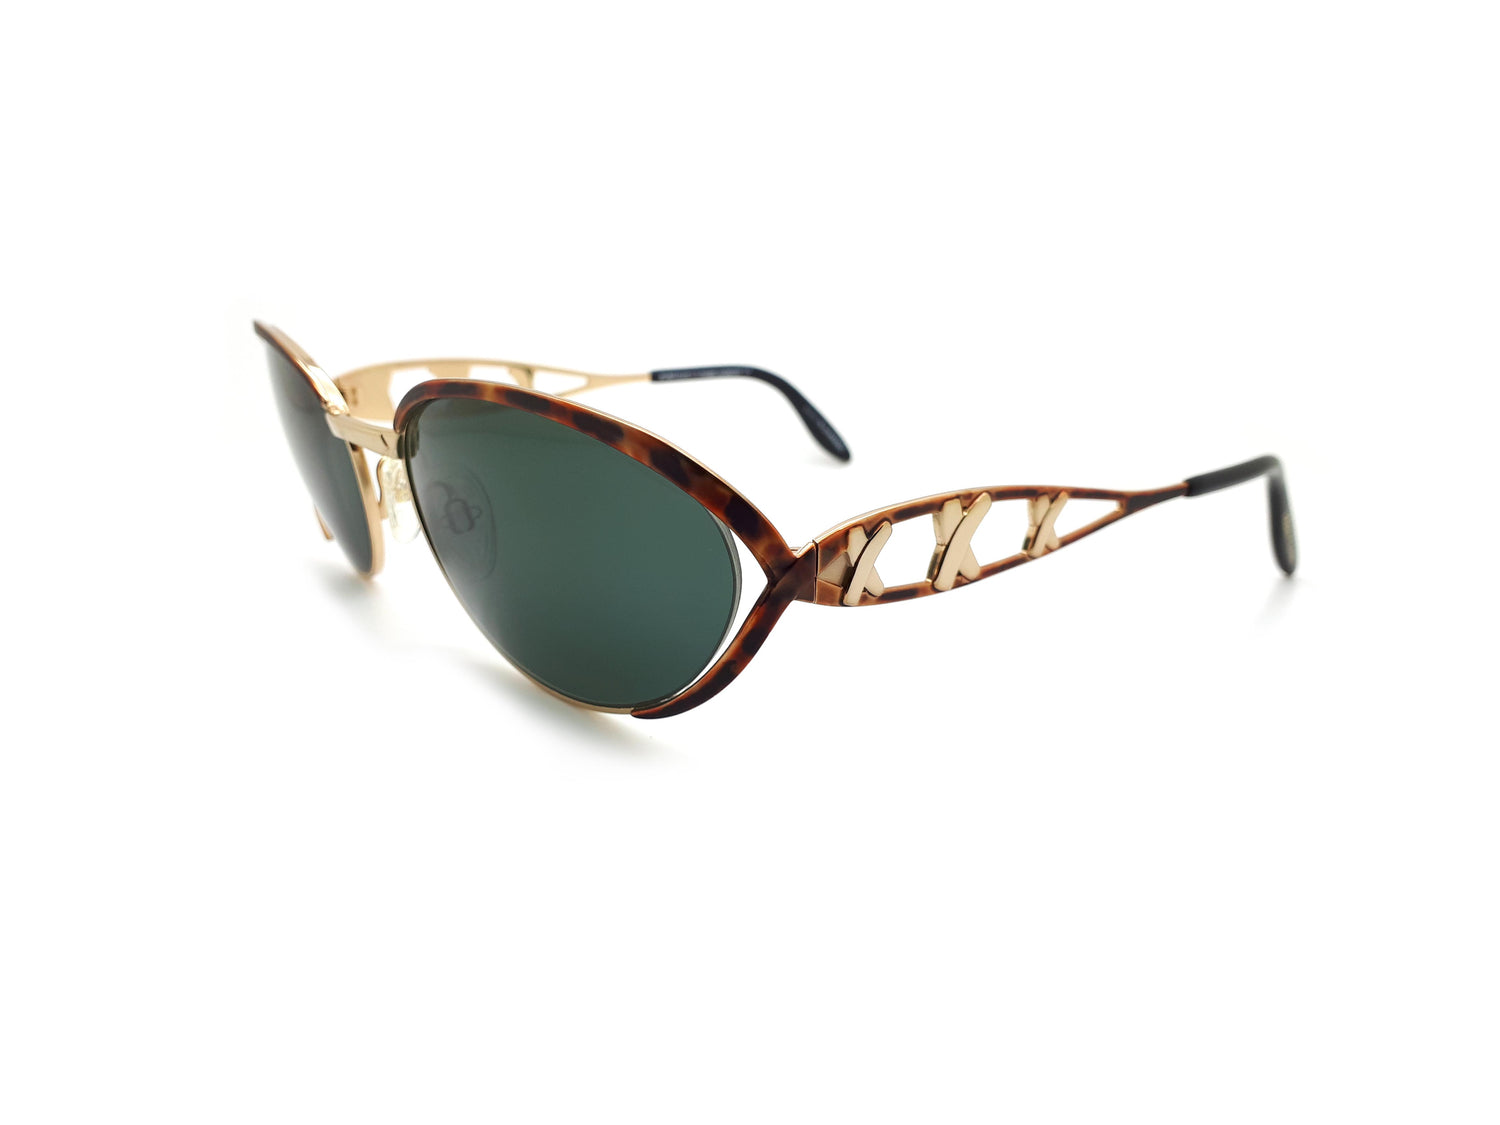 Paloma Picasso Mod 8628 300 Vintage 90s Sunglasses – Ed & Sarna Vintage ...